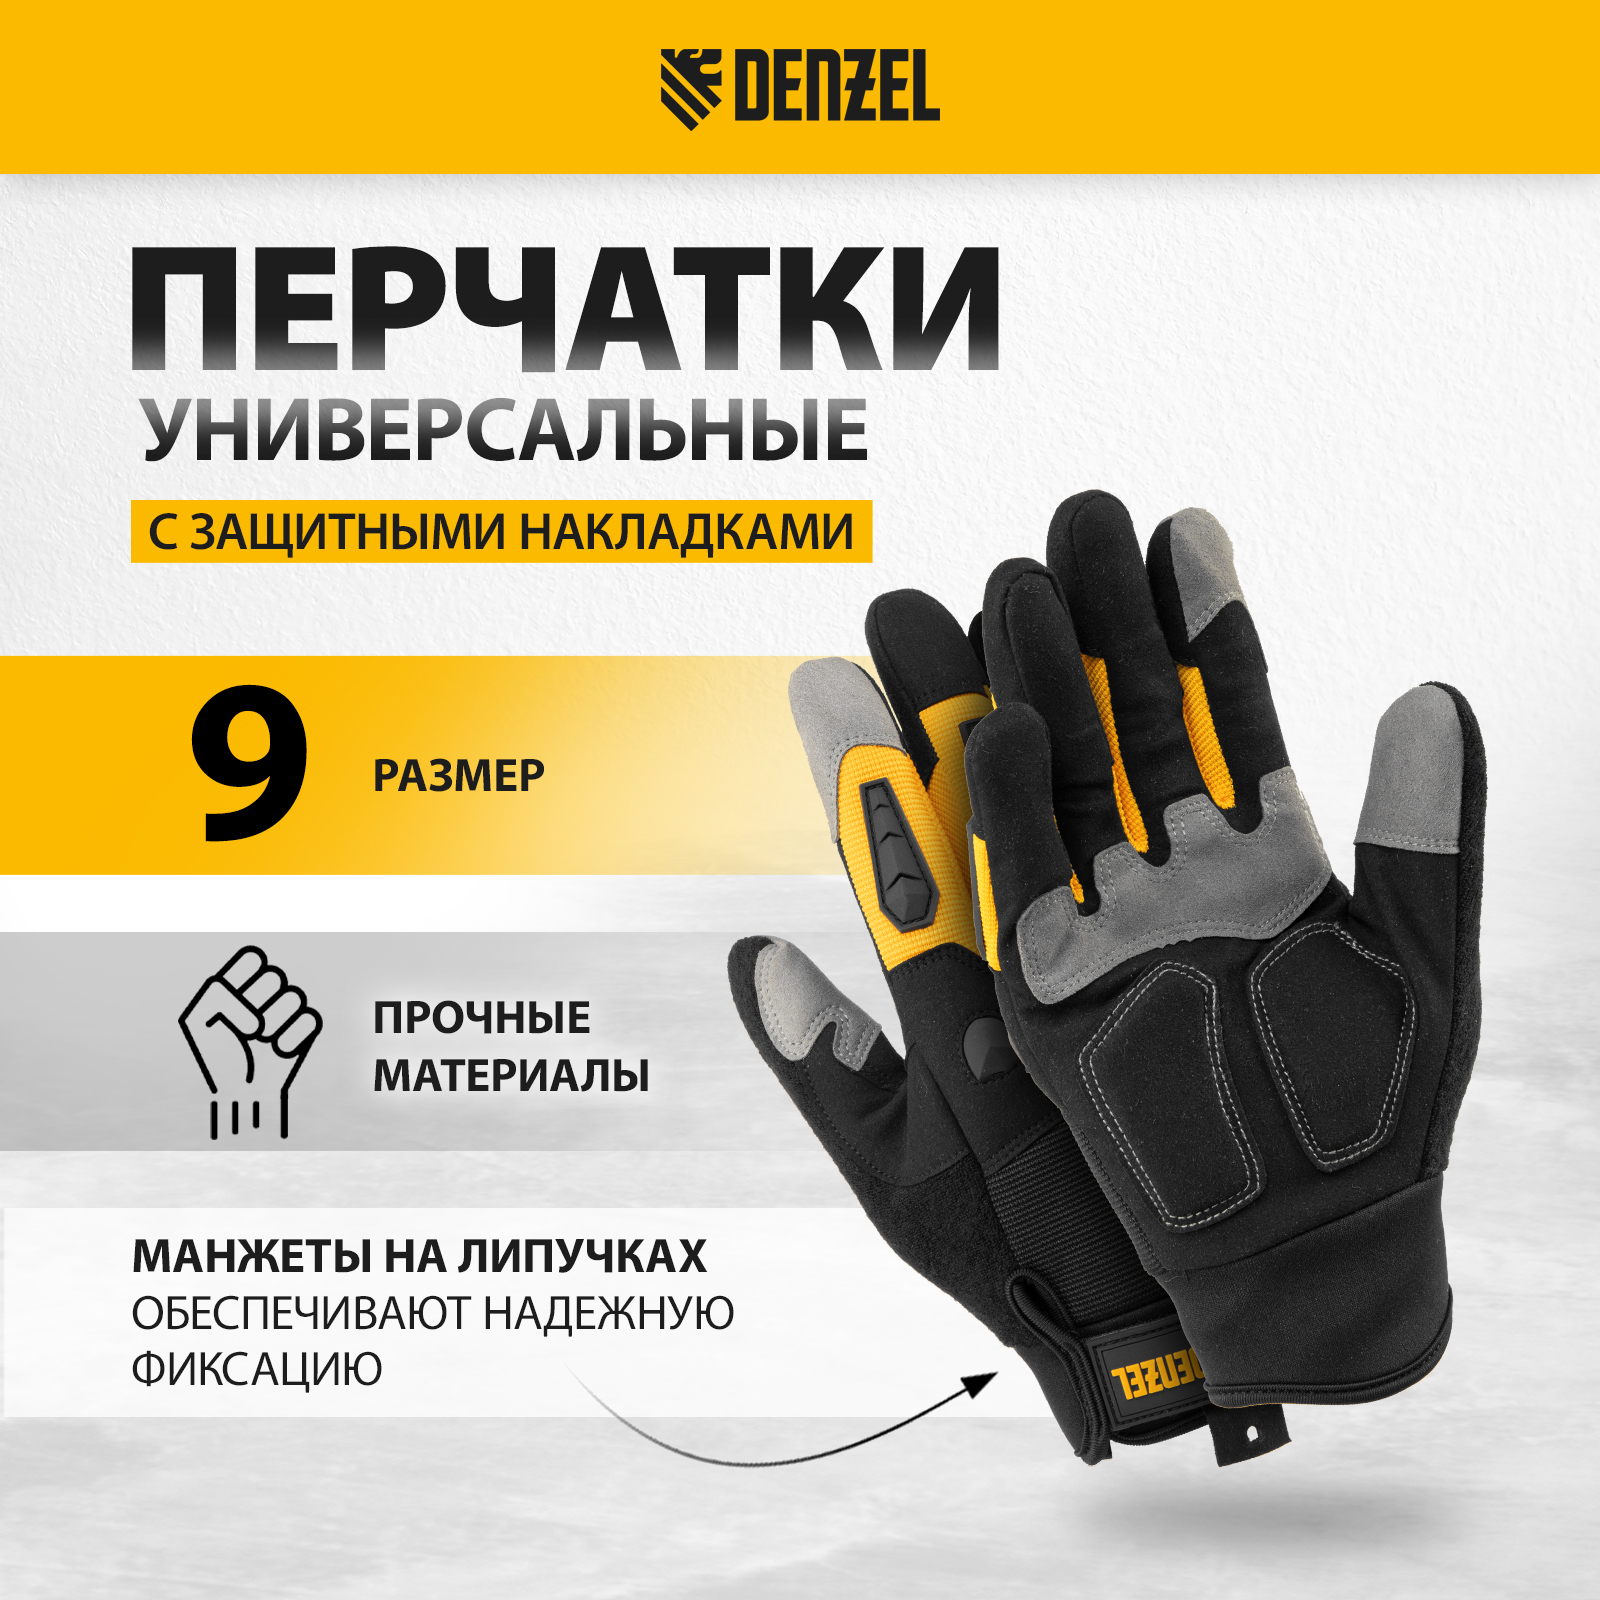 Перчатки универсальные DENZEL размер 9 68002 перчатки специальные военсклад мск 25269 40